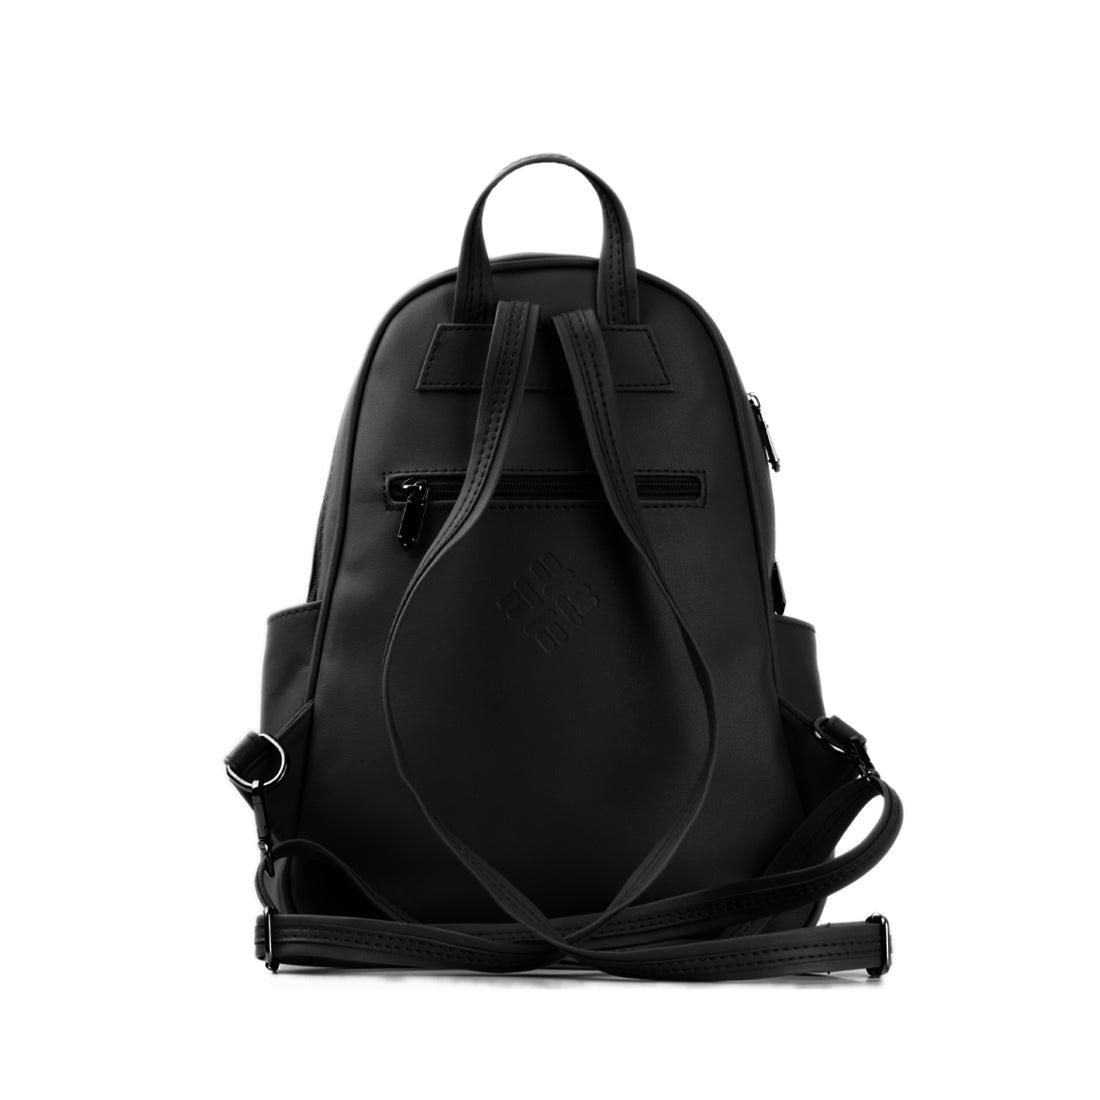 Black Vivid Backpack Lighten Linen - CANVAEGYPT